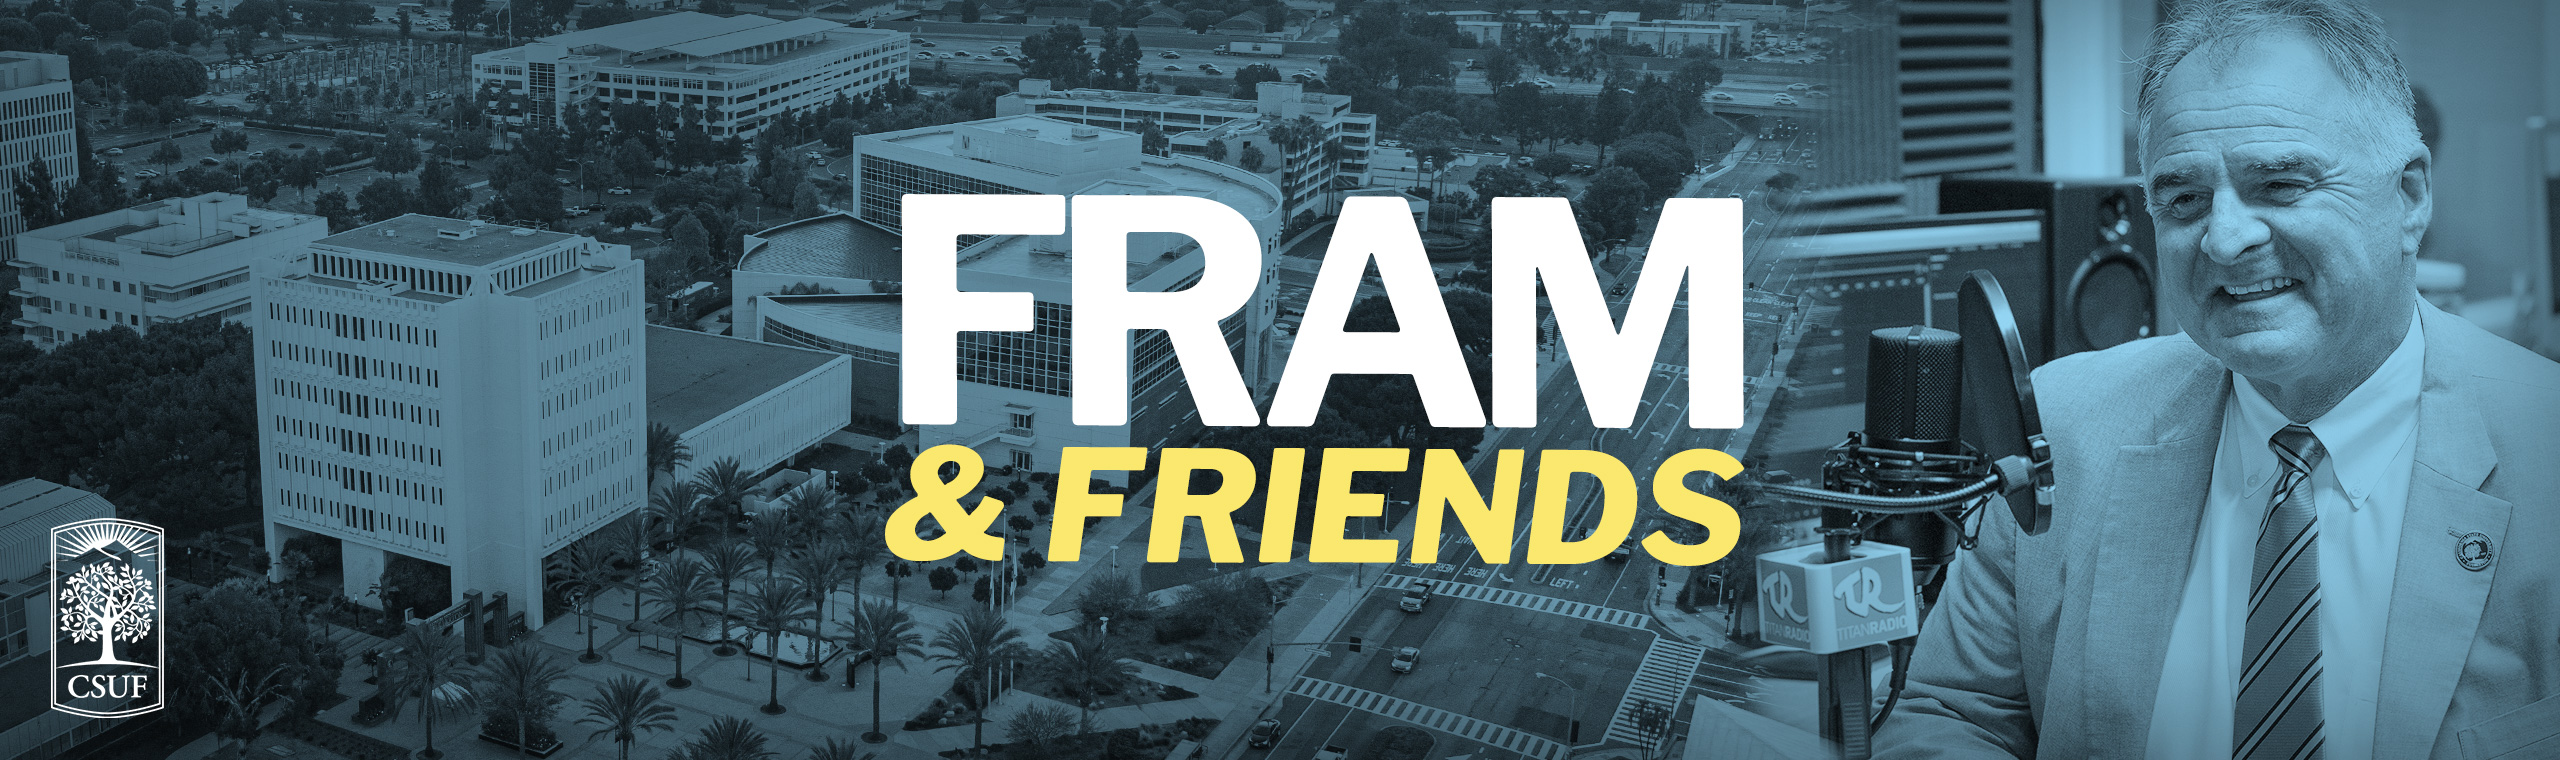 Fram and Friends banner v2